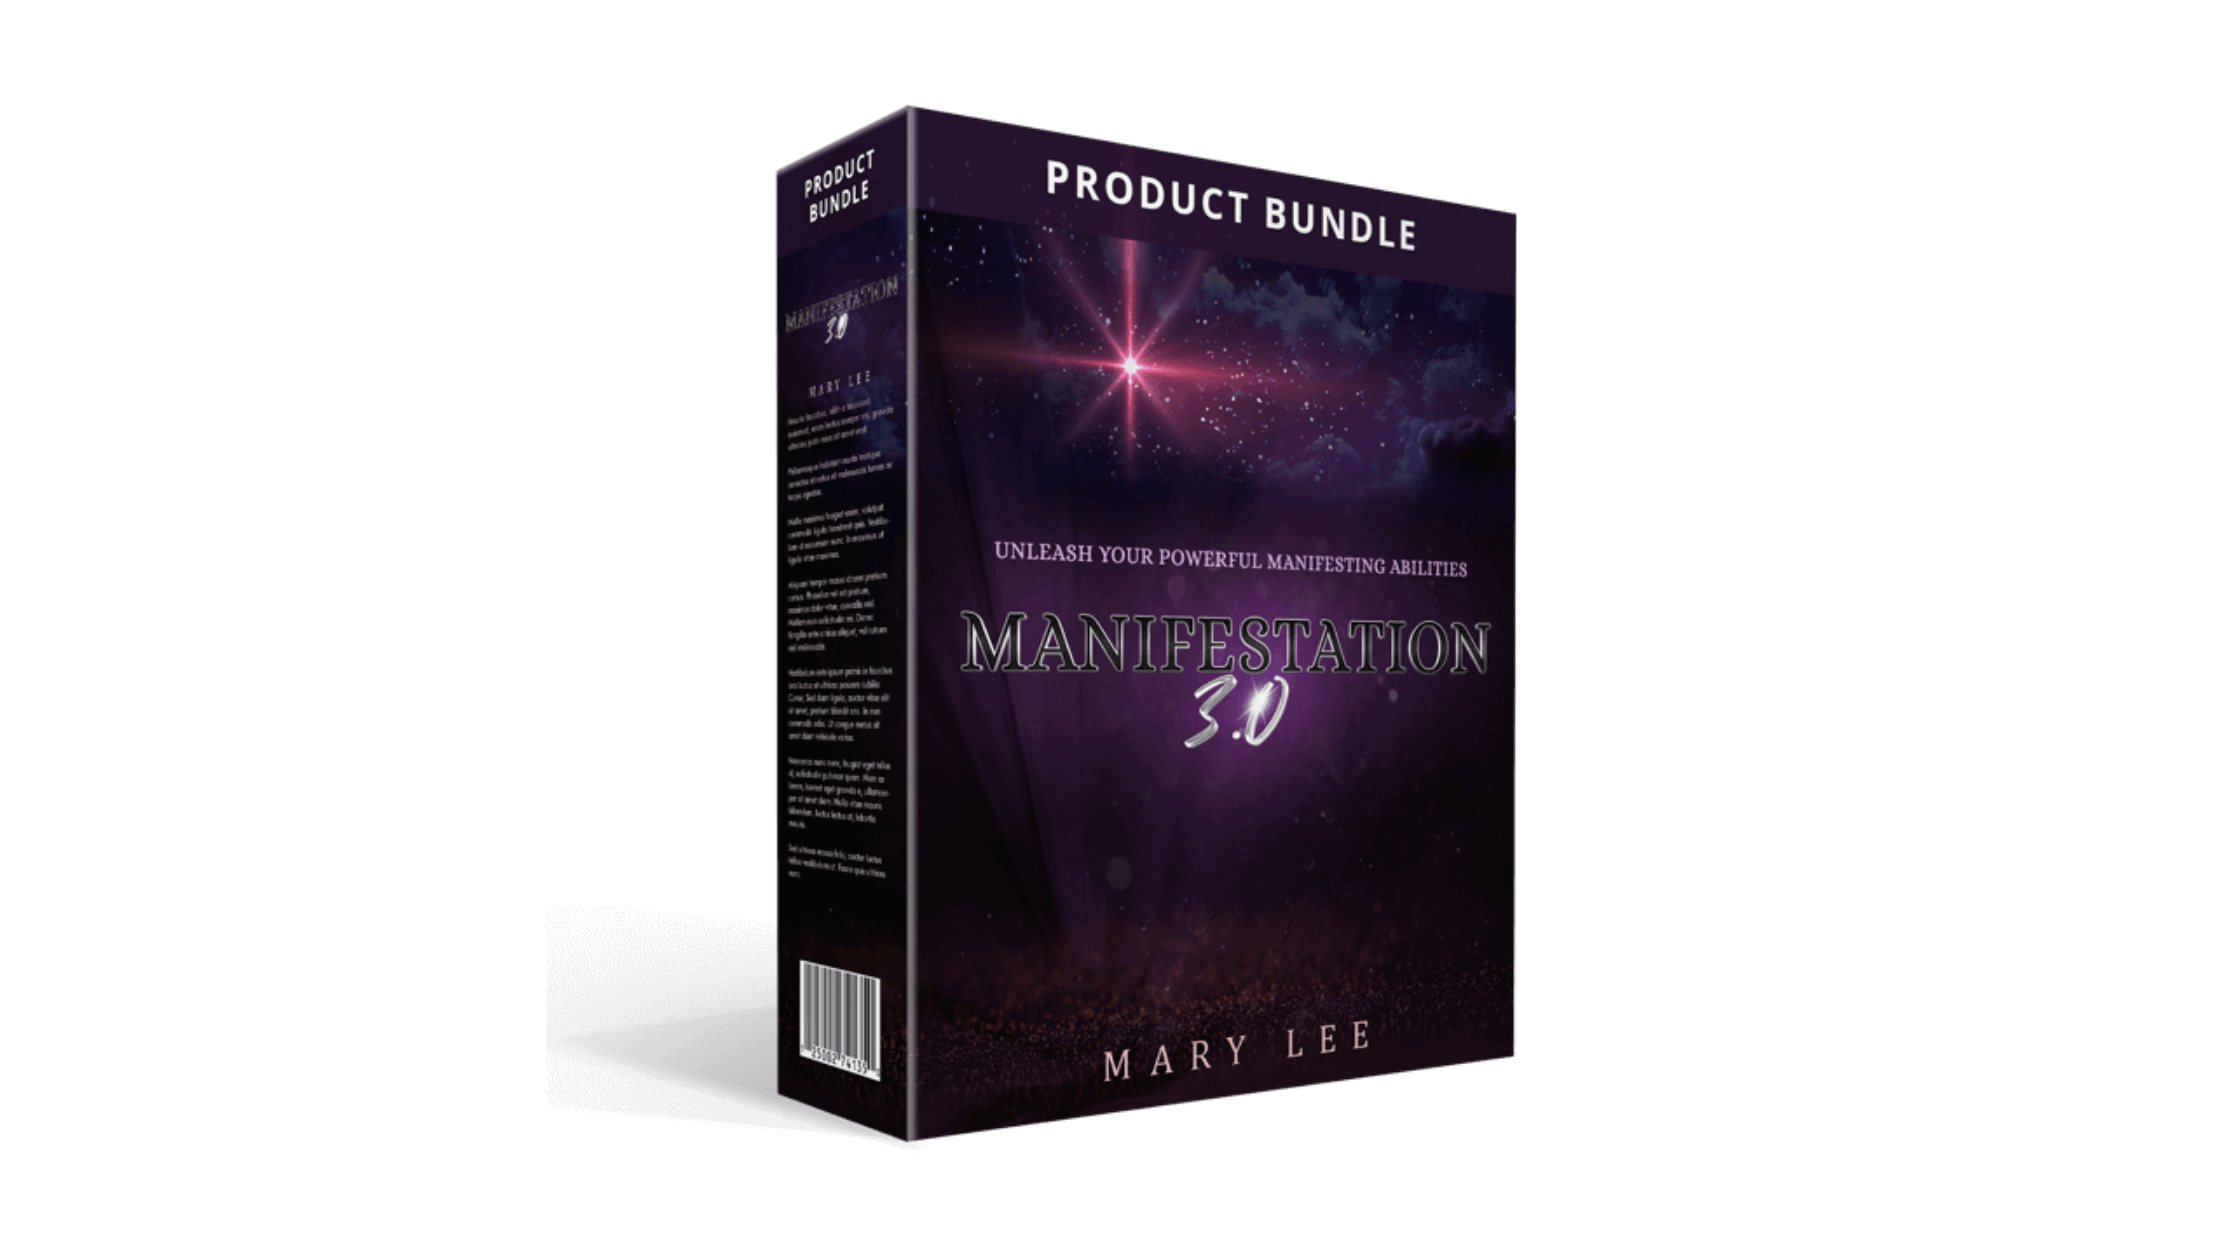 Manifestation-3.0-Reviews